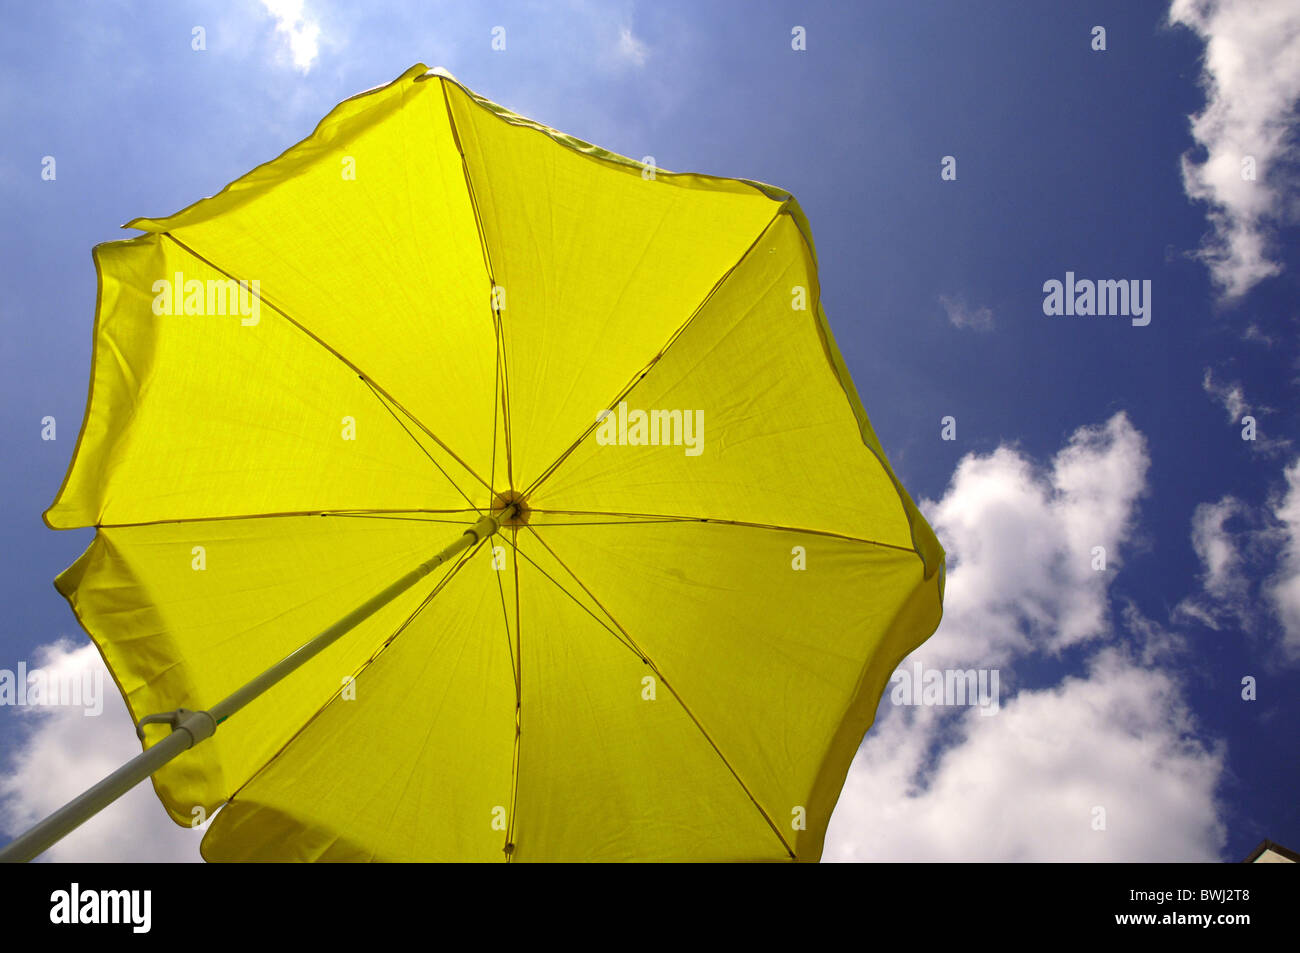 Jaune parapluie parasol protection UV sun ciel nuage ciel été soleil ombre ombre bronzage holi donateur Banque D'Images